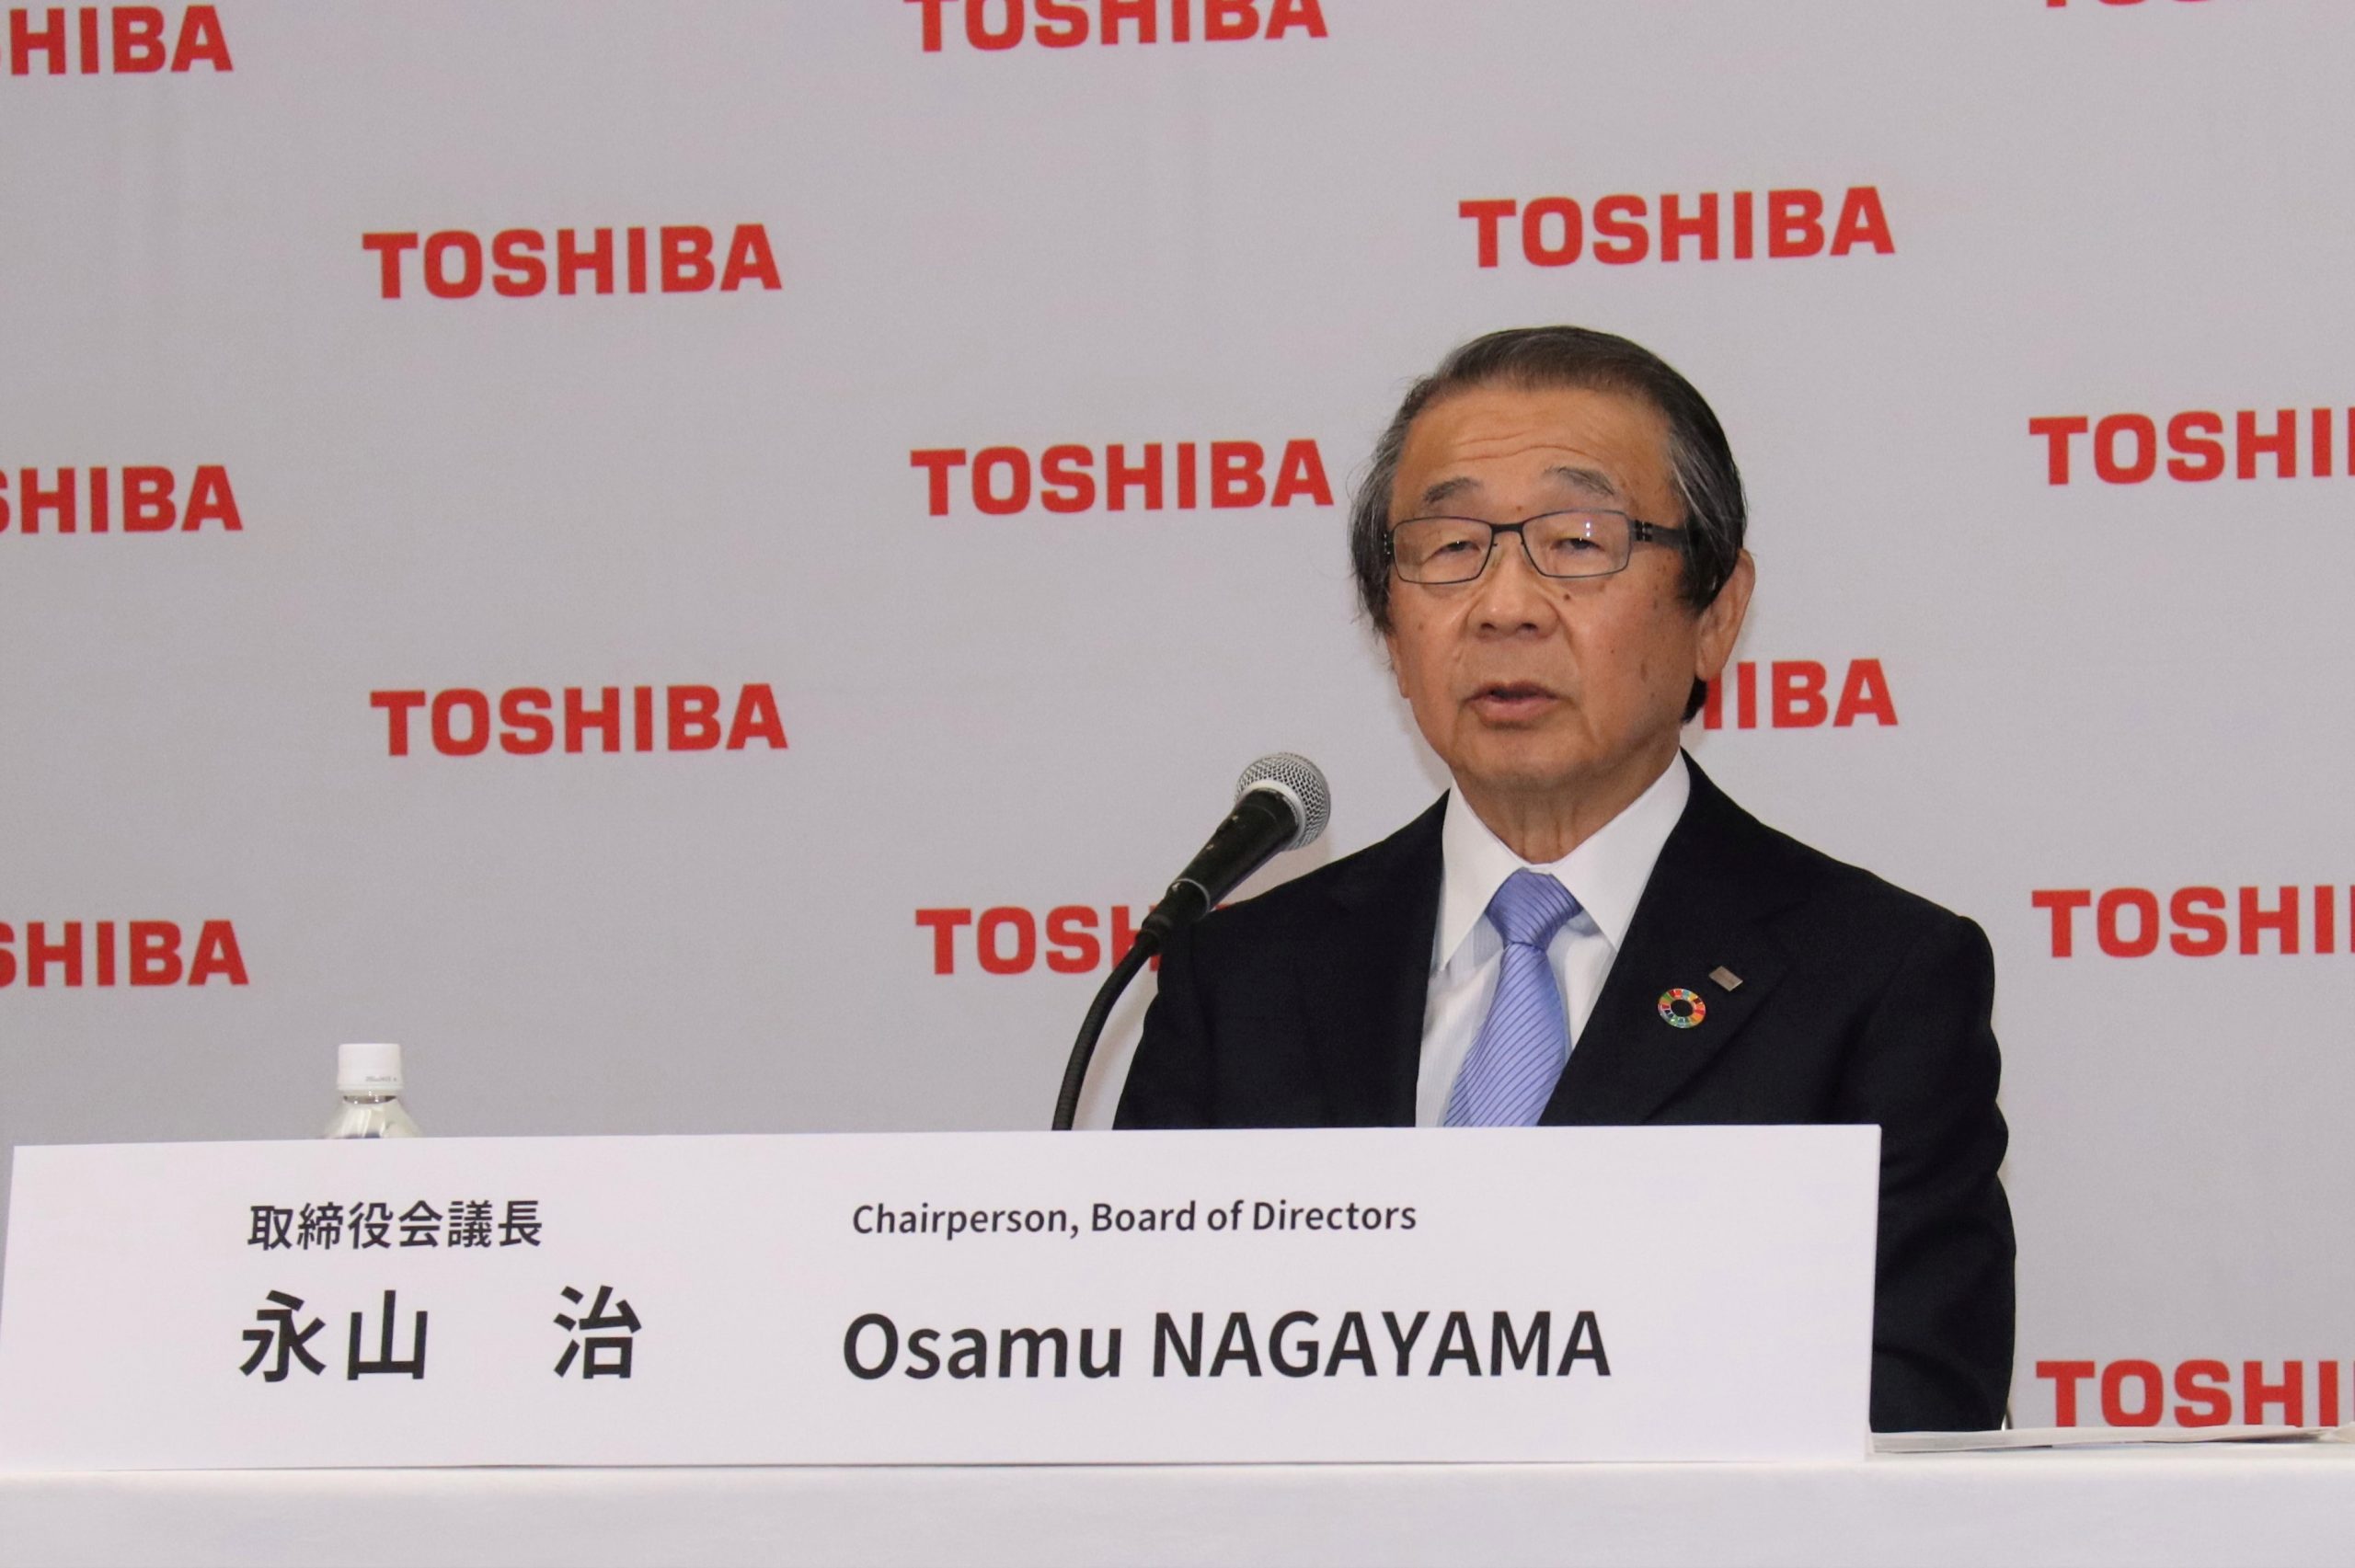  Toshiba CEO Tsunakawa named interim chairman after investors oust Nagayama